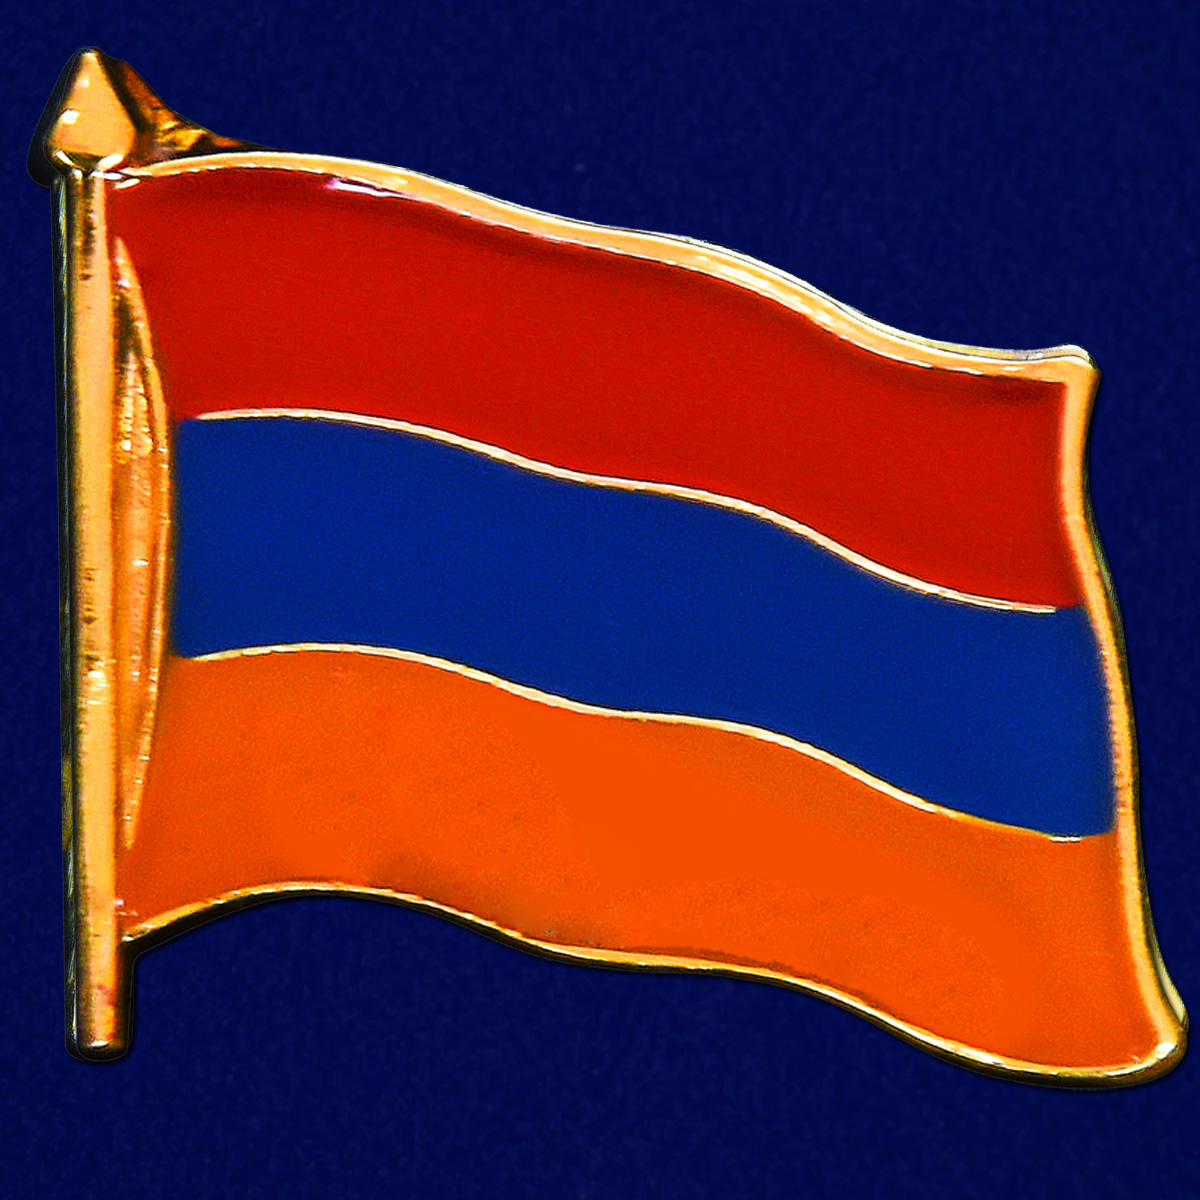 Купите значок "Флаг Армении" в качестве сувенира армянину 